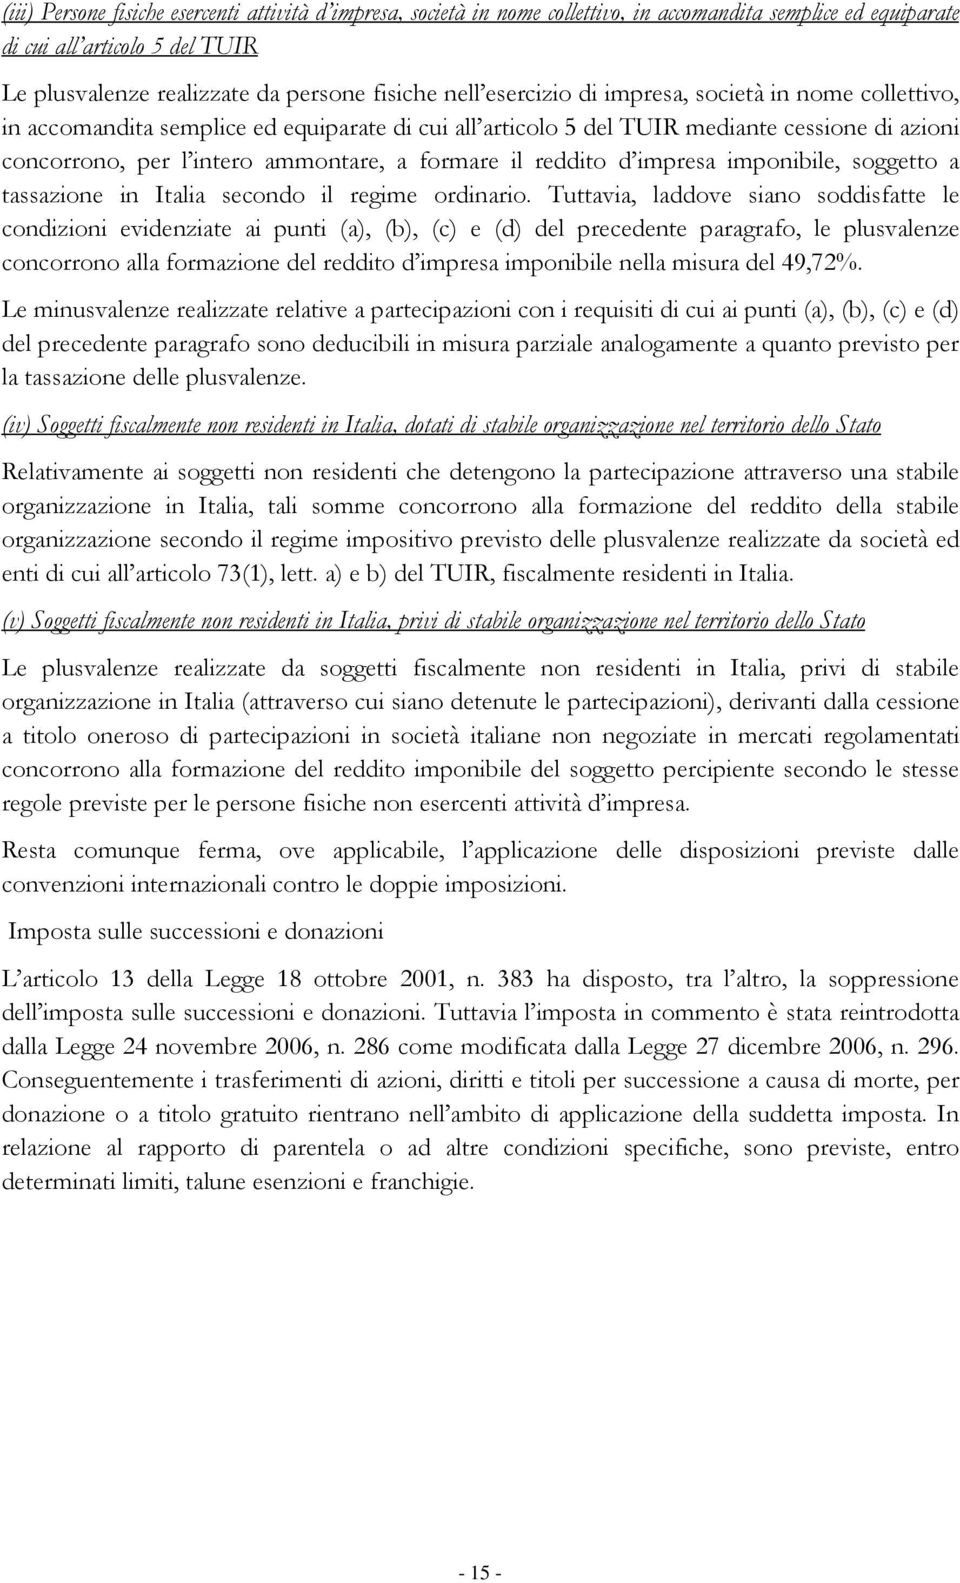 reddito d impresa imponibile, soggetto a tassazione in Italia secondo il regime ordinario.